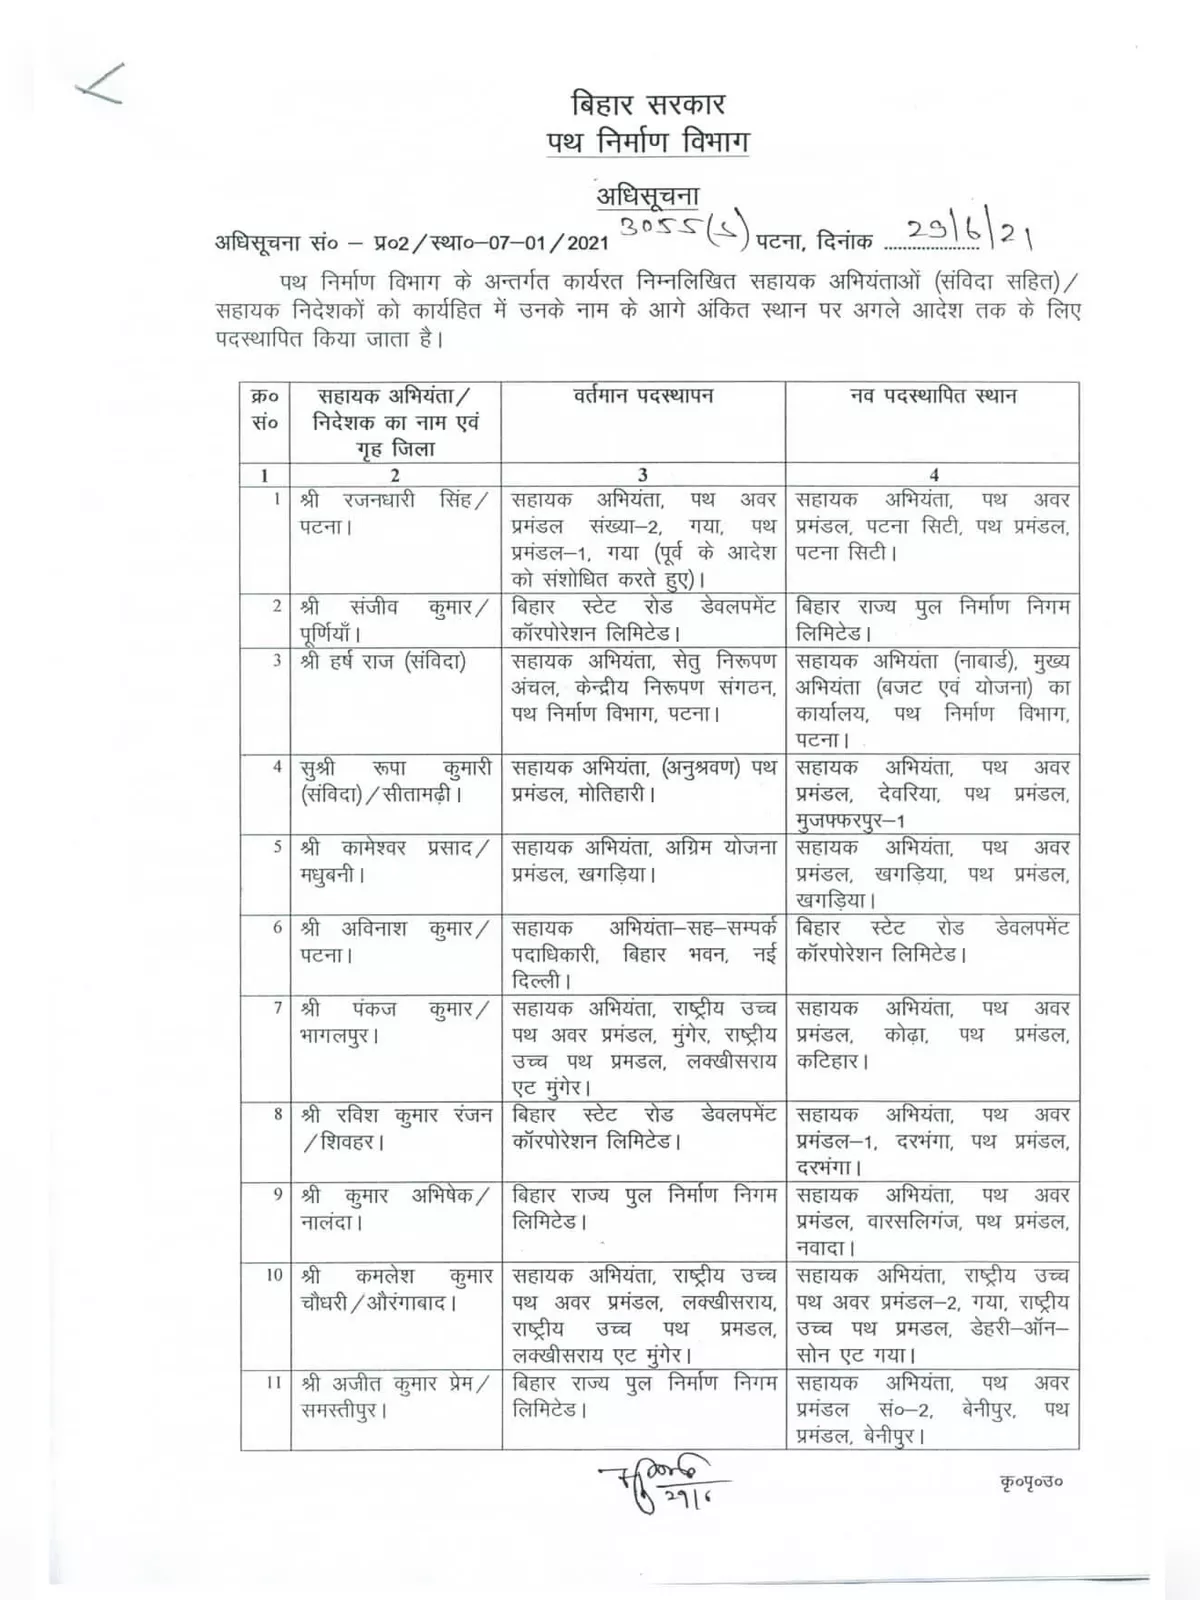 Co Transfer (Transfer Order) List Bihar 2021